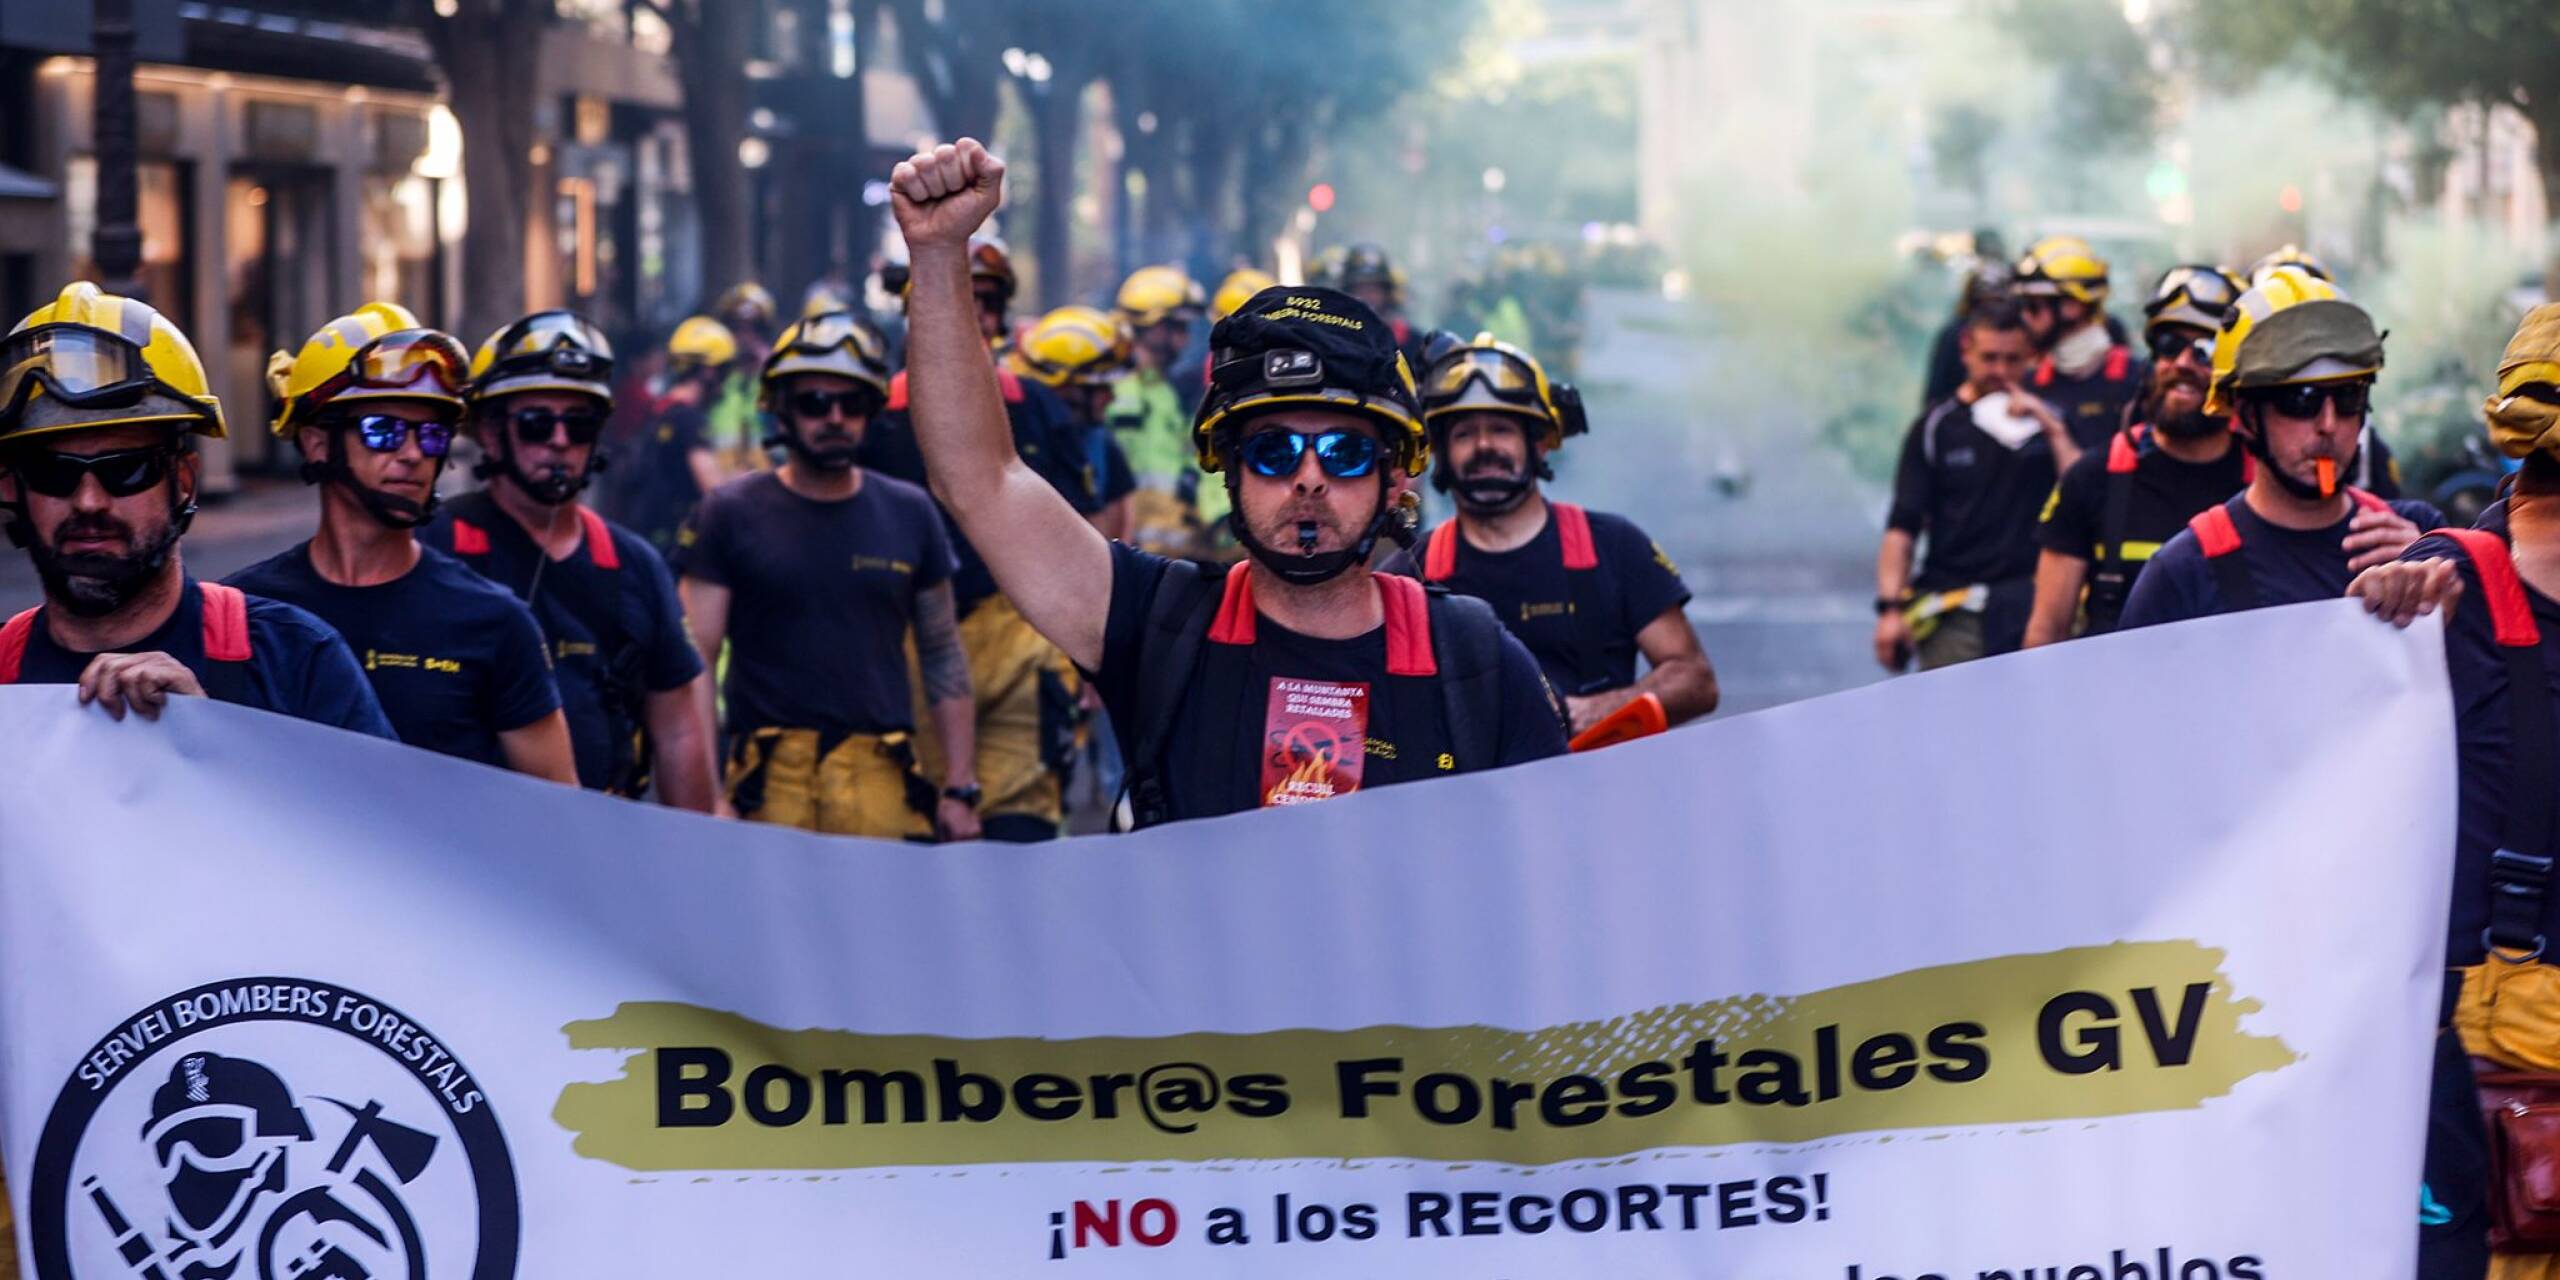 Ihr Beruf ist es, Waldbrände zu löschen. Für eine Demonstration gegen Kürzungen und für einen einheitlichen Tarifvertrag gehen Feuerwehrleute der Generalitat Valenciana in der spanischen Stadt Valencia auf die Straße.